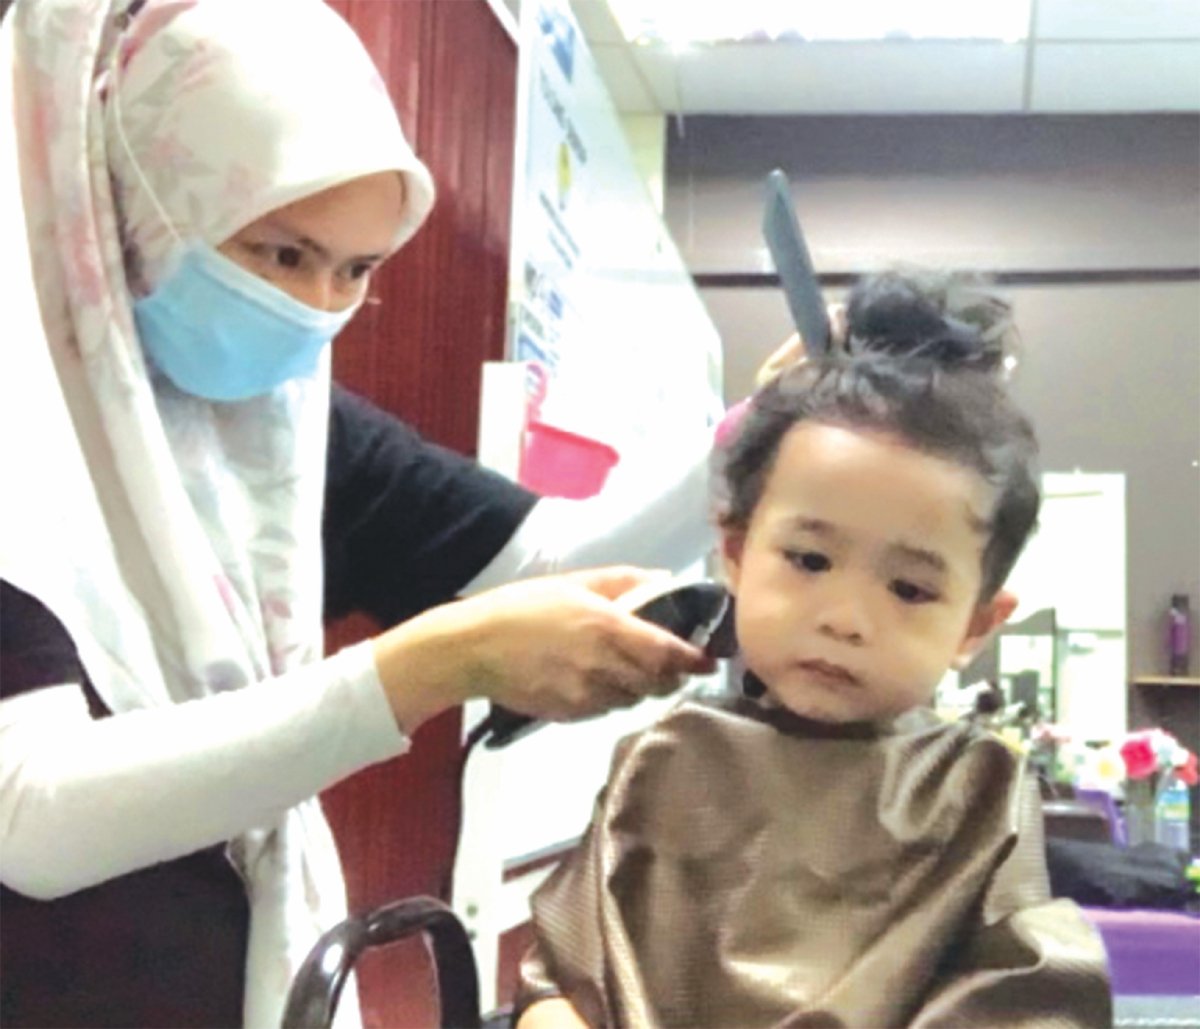 IBU bapa perlu berhati-hati ketika memotong di bahagian tepi kepala kanak-kanak dan perlu ‘melipatkan’ telinga jika ingin memotong di belakangnya.